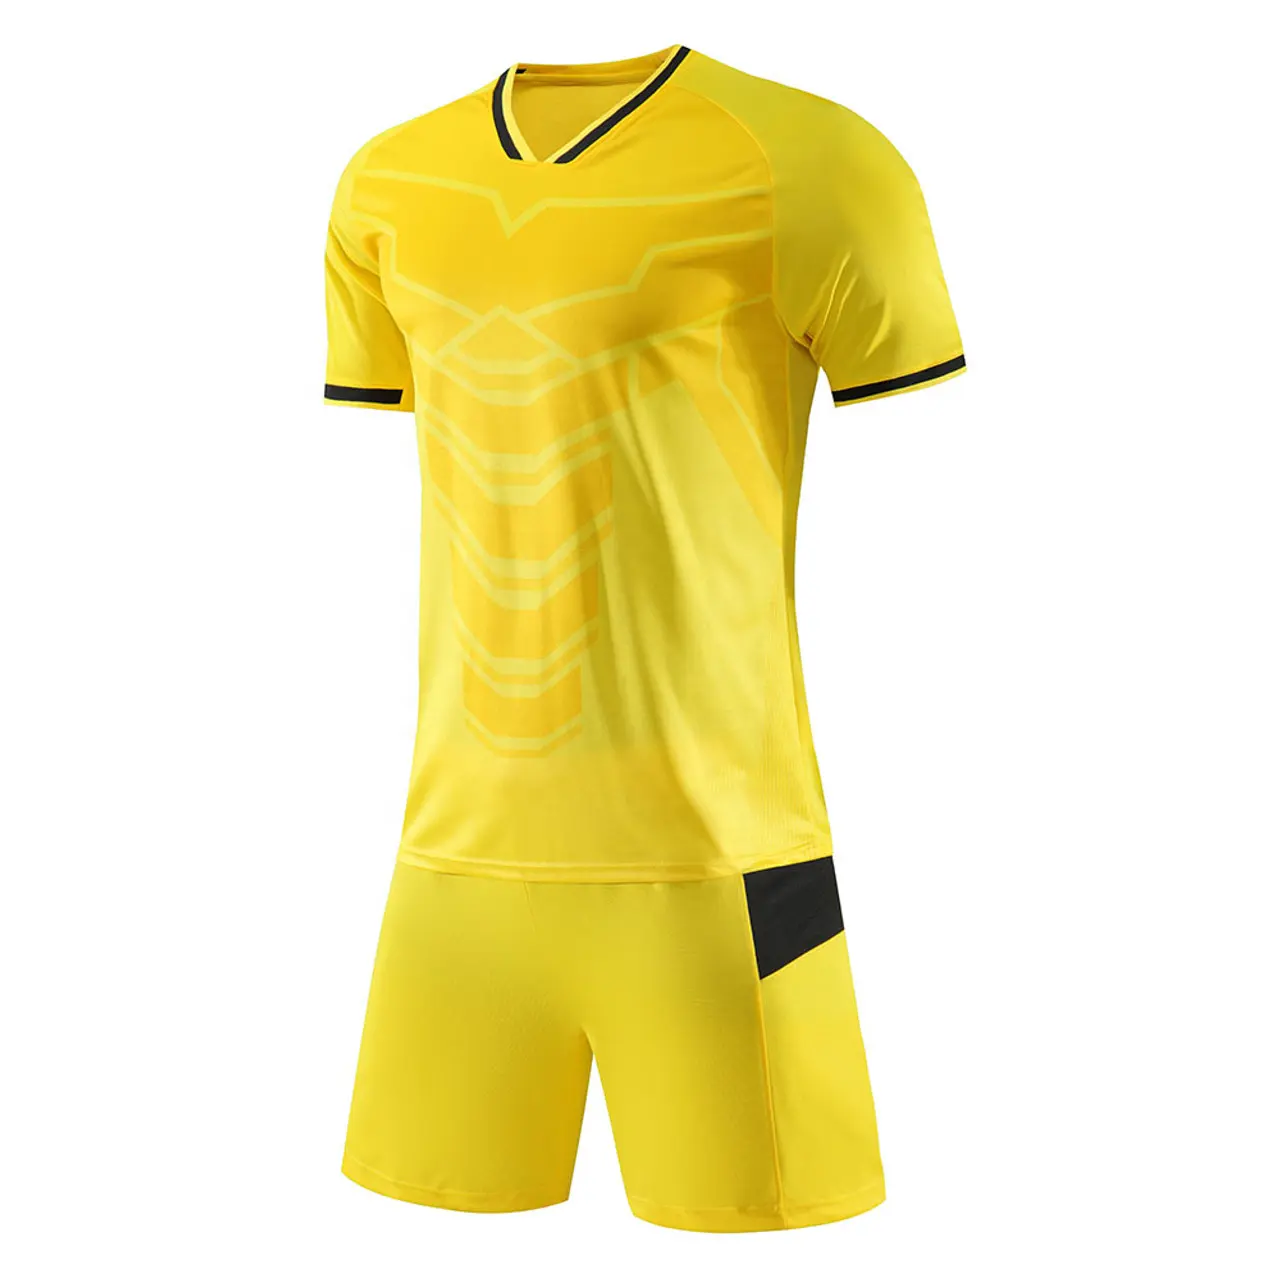 Sıcak satış fiyat 100% Polyester ucuz fiyat futbol üniformaları Unisex futbol kiti spor giyim için nakış Logo tasarım etiketleri ile